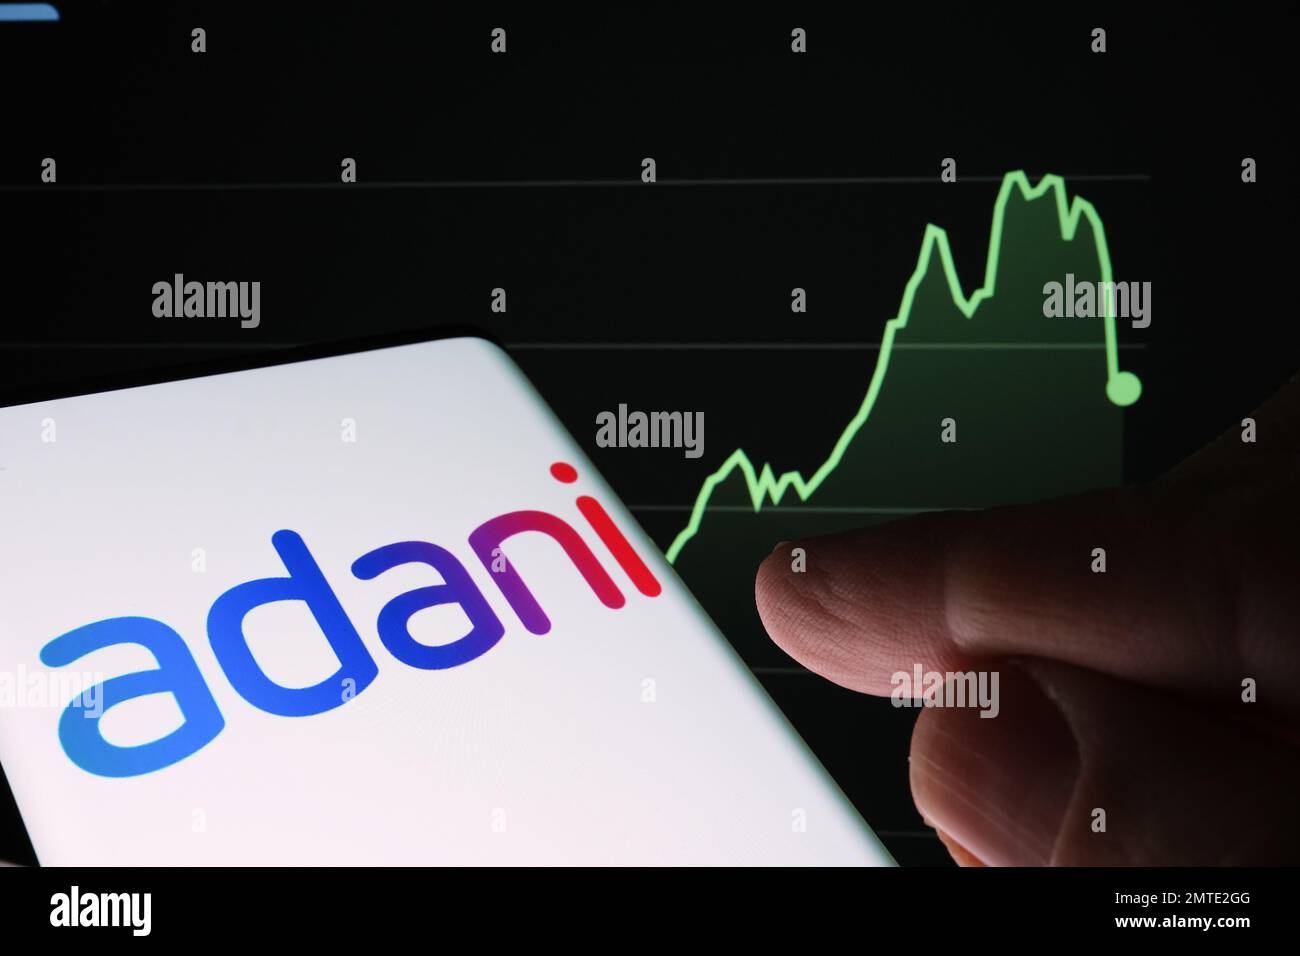 Logotipo de Adani Group visto en la pantalla del teléfono inteligente y gráfico de caída del precio de las acciones de la empresa visto en el fondo borroso. Gráfico de valores reales durante un año Foto de stock